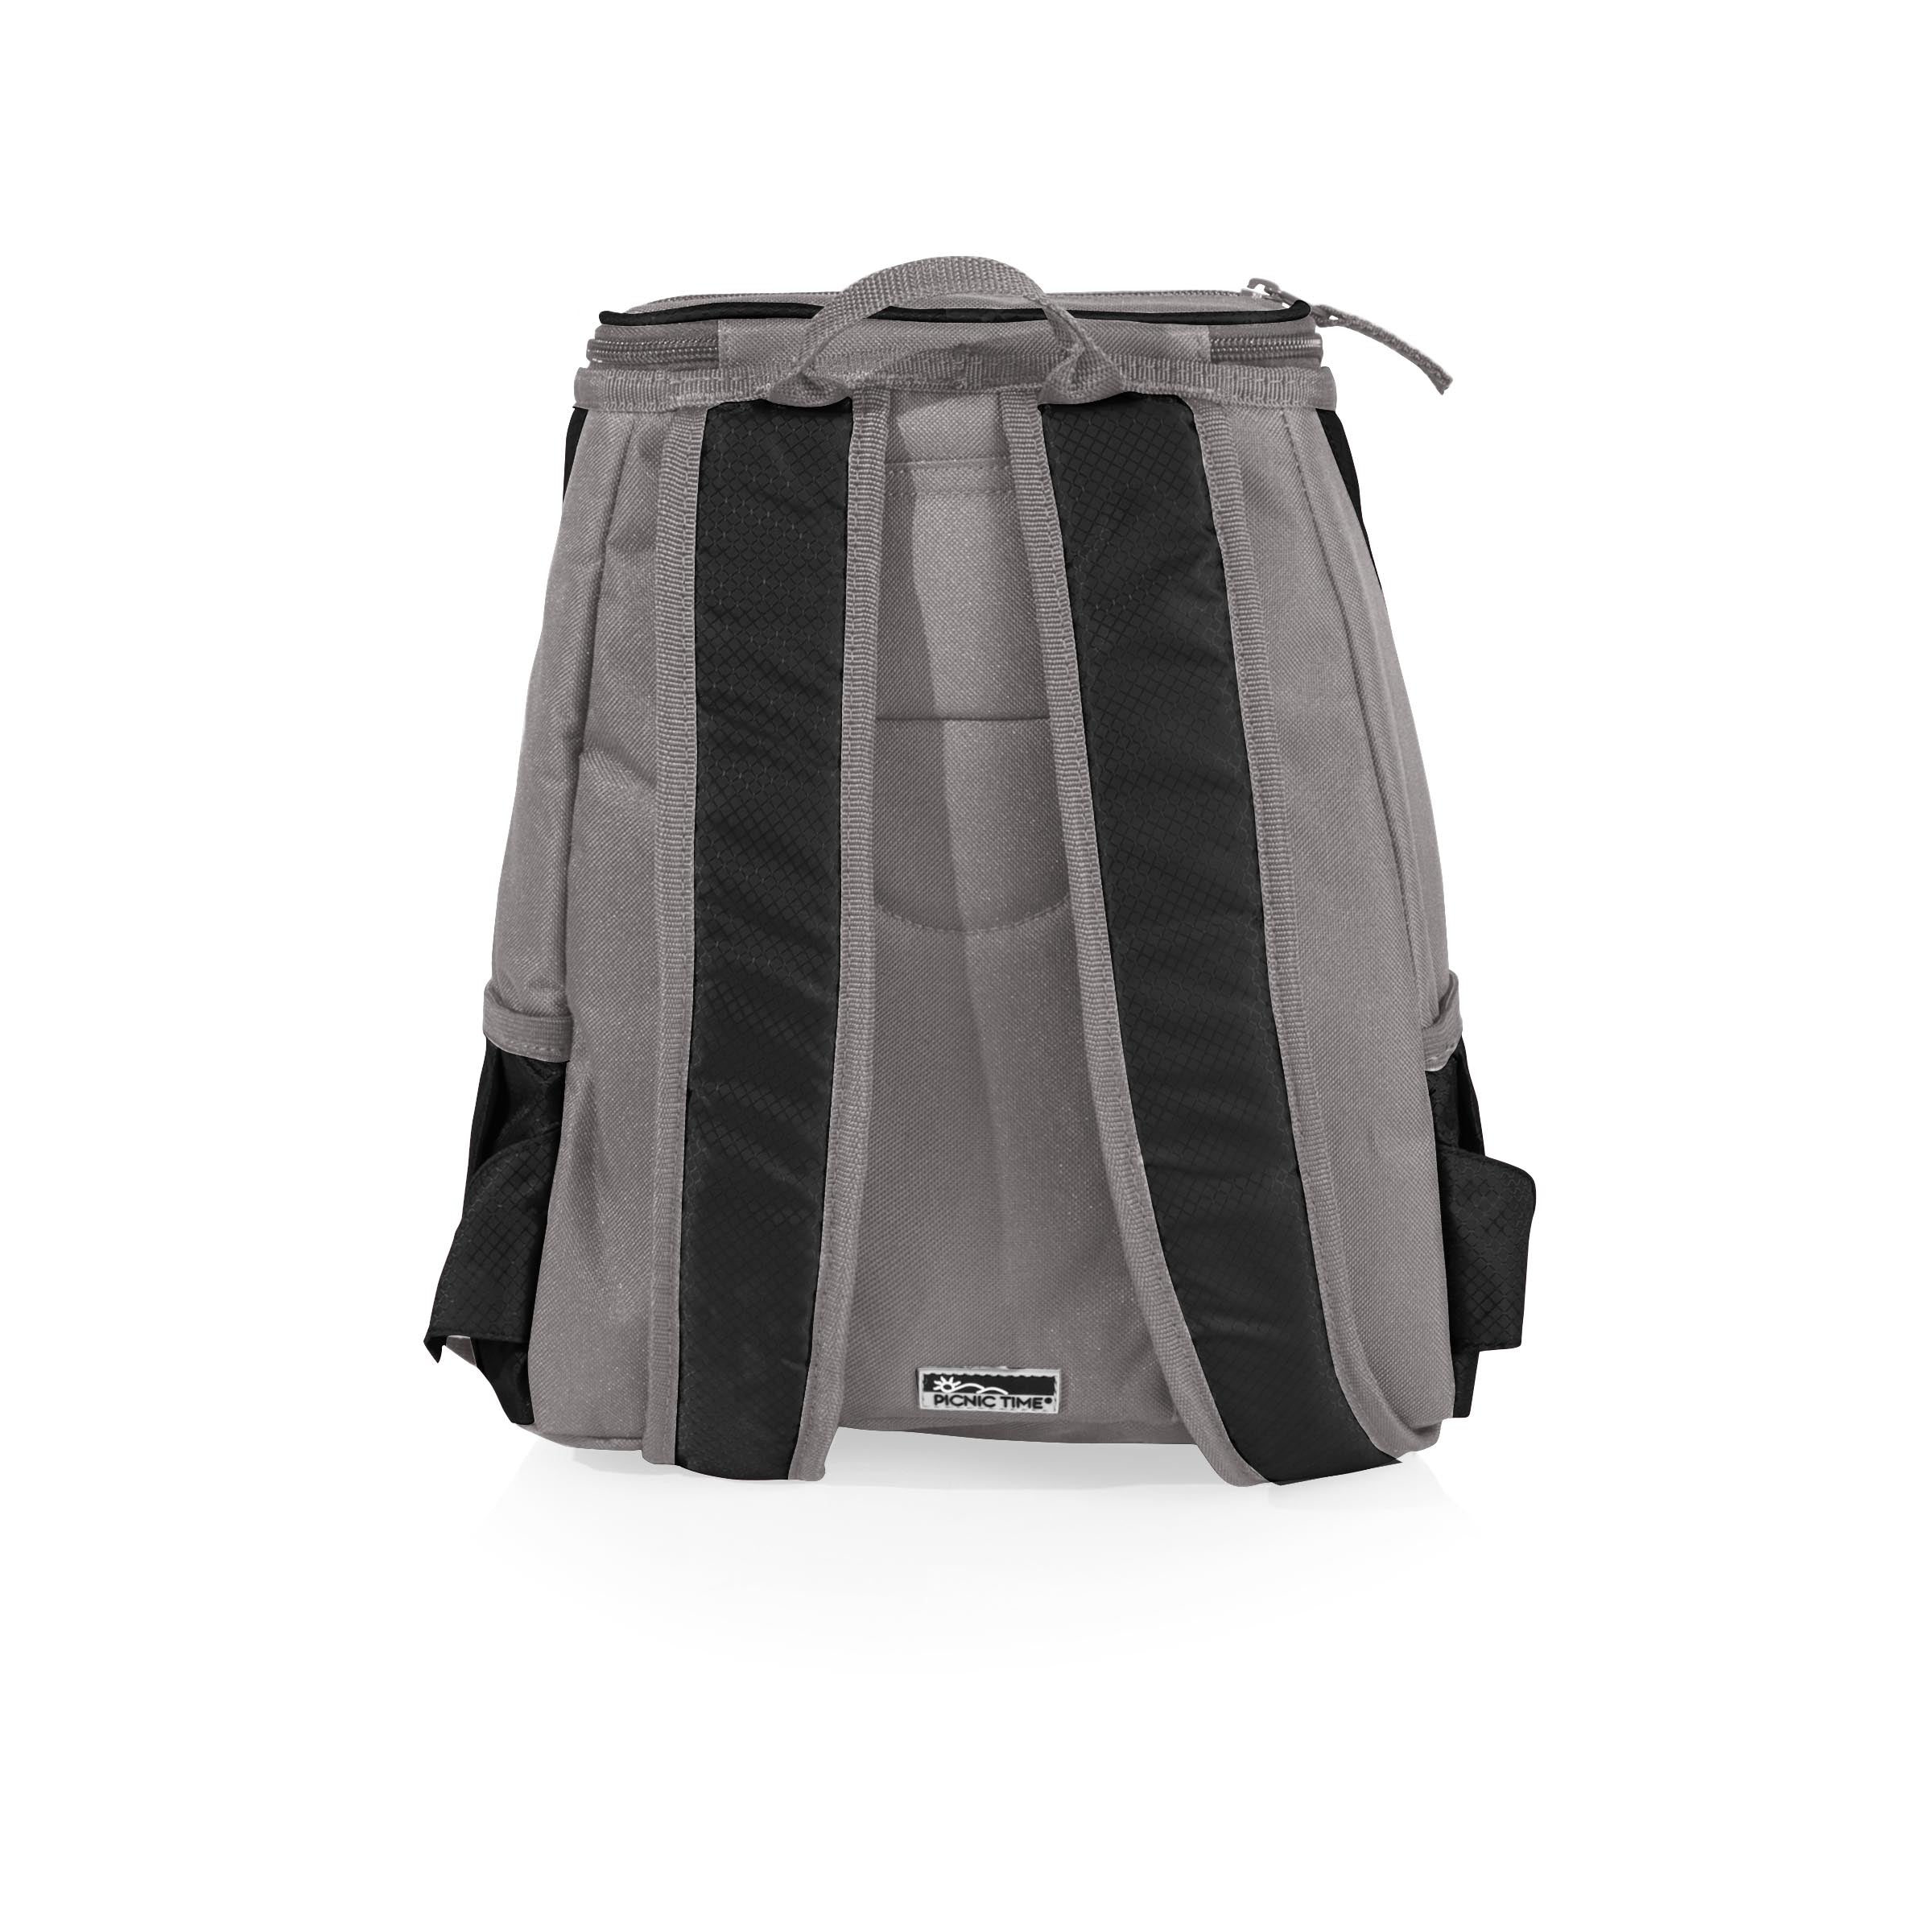 Baylor Bears - PTX Backpack Cooler